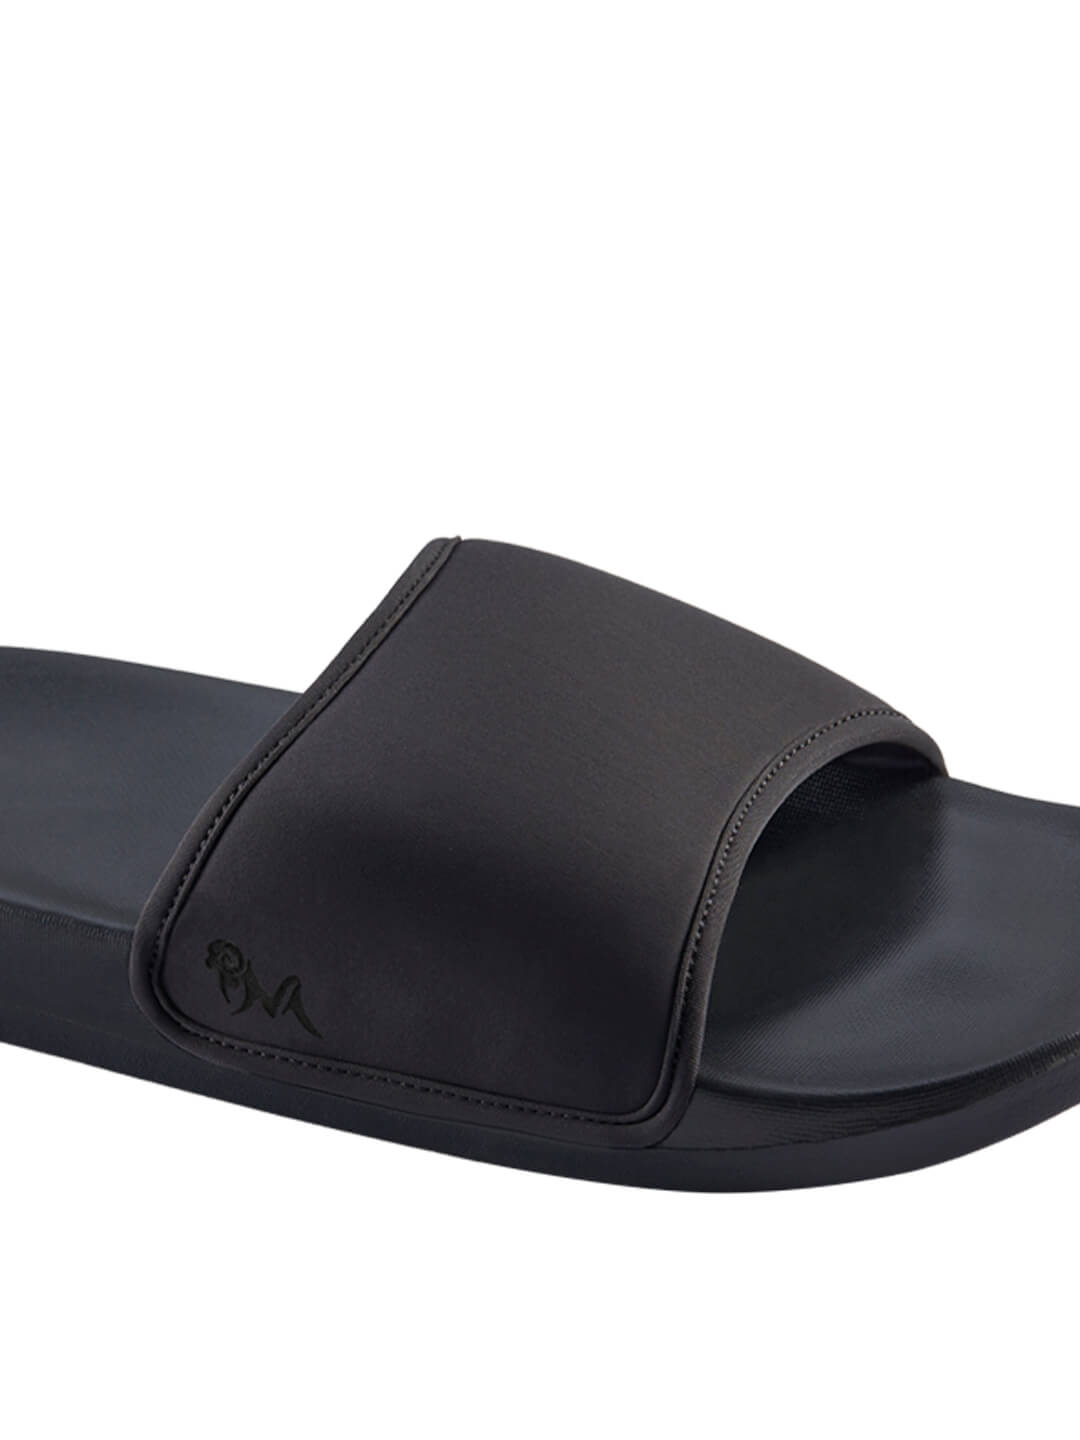  Footwear, Unisex Footwear, Black Slides